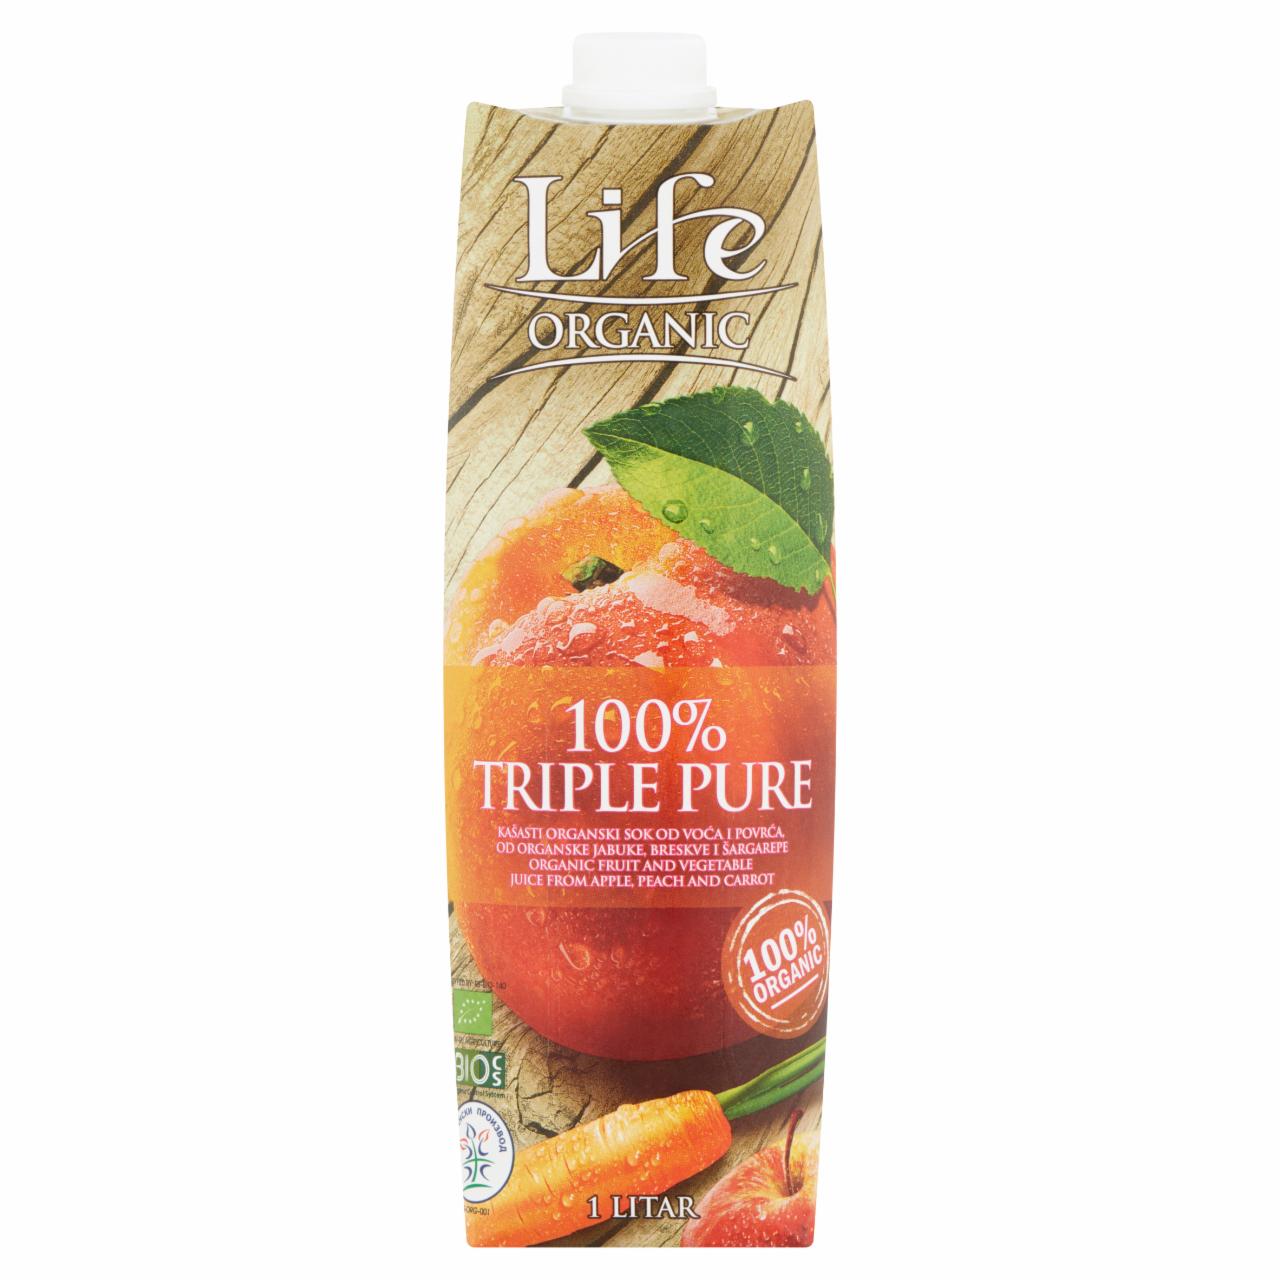 Képek - Life Organic Triple Pure rostos organikus gyümölcs és zöldség ital 1 l